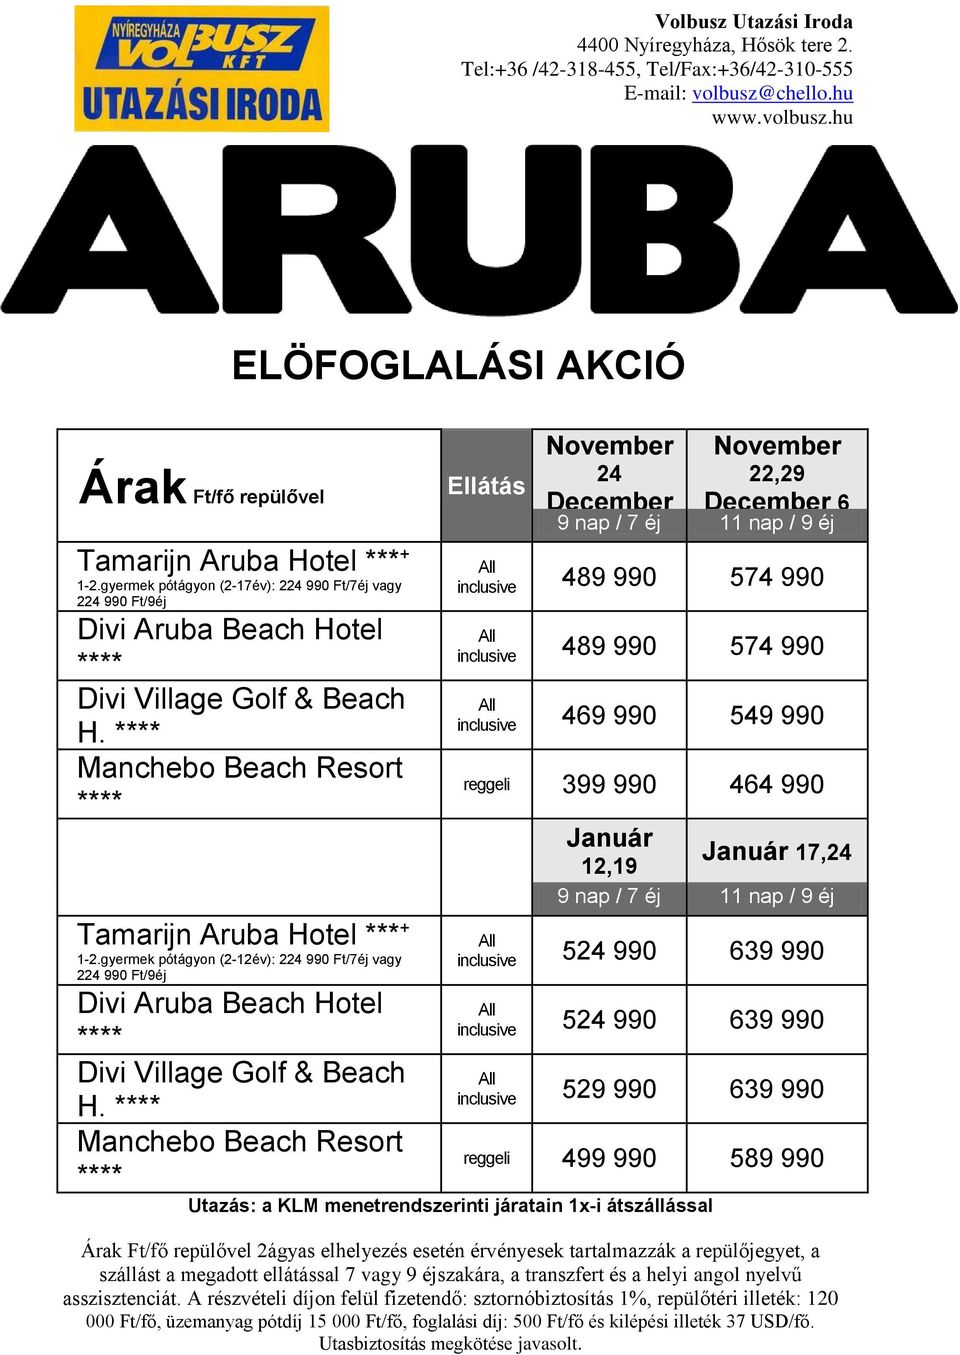 gyermek pótágyon (217év): 224 990 Ft/7éj vagy 224 Manchebo 990 Ft/9éj Beach Resort Félpanziós felár 70 000 Ft/fő/7éj vagy 90 000 Ft/fő/9éj Tamarijn Aruba Hotel *** + 12.